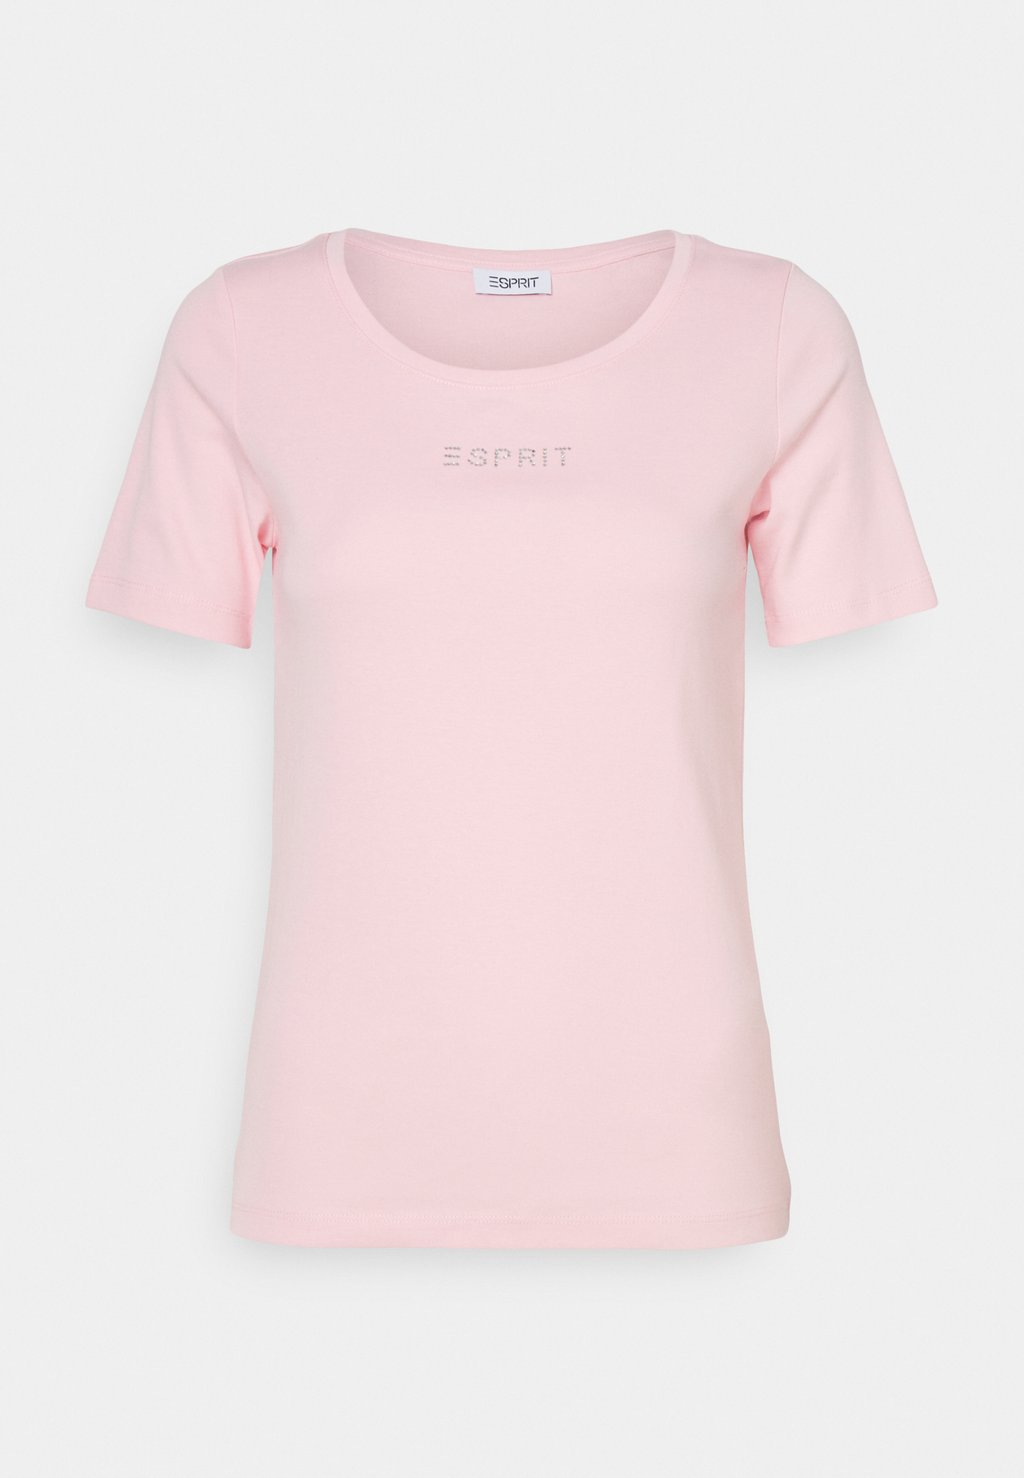 Футболка с принтом Esprit, светло-розовый футболка с принтом esprit светло серый